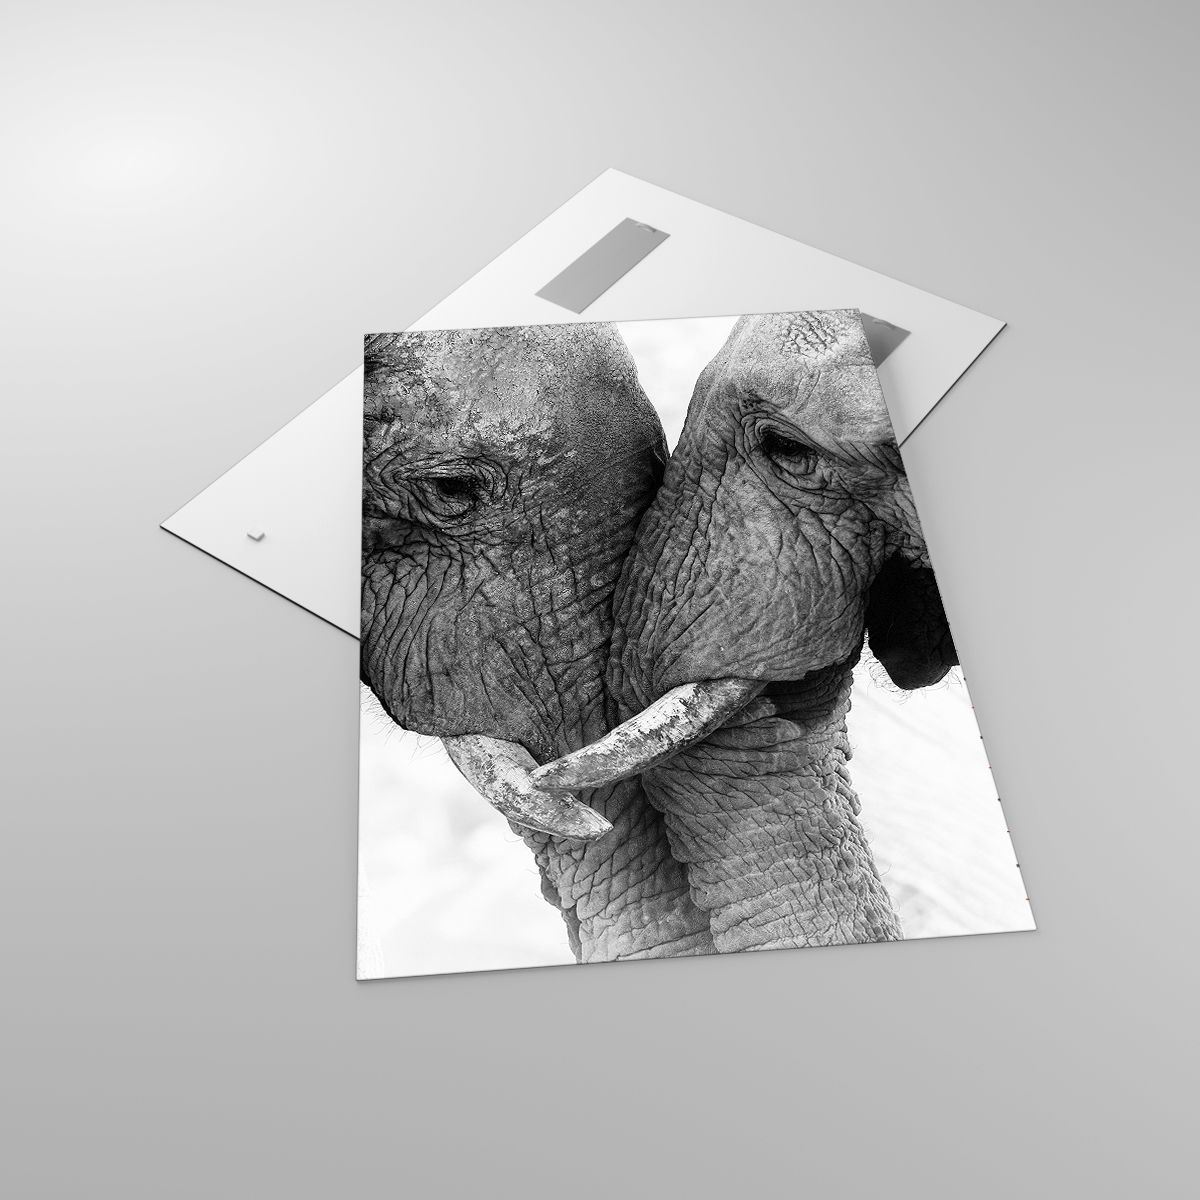 Glasbild Elefant, Glasbild Tiere, Glasbild Afrika, Glasbild Schwarz Und Weiß, Glasbild Liebe